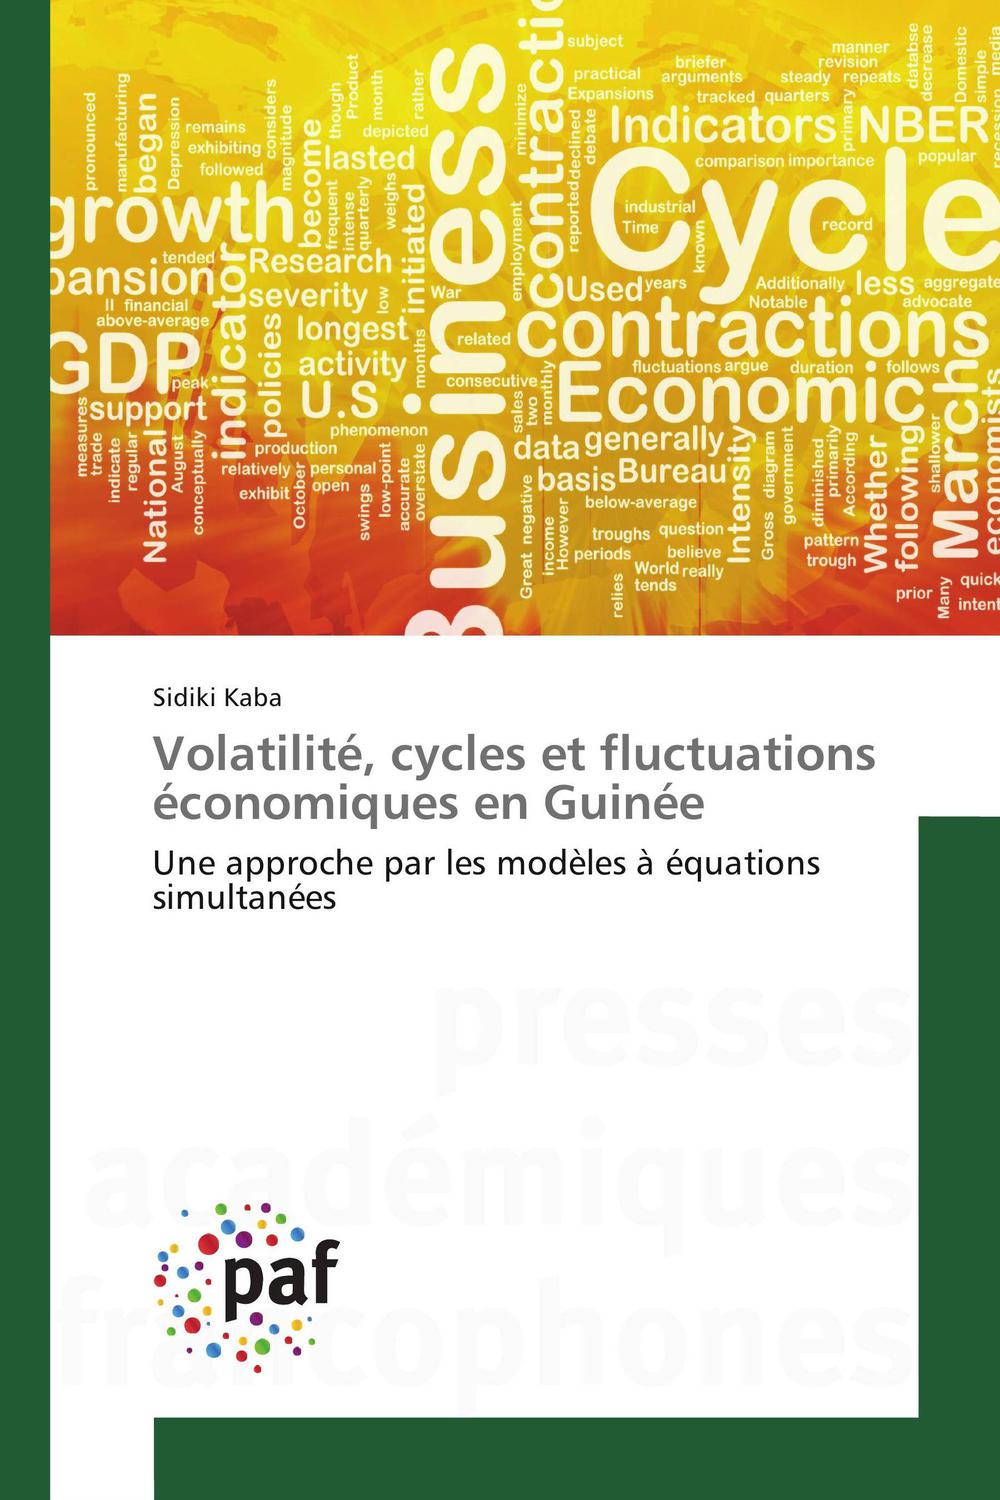 Volatilité, cycles et fluctuations économiques en Guinée - Sidiki Kaba